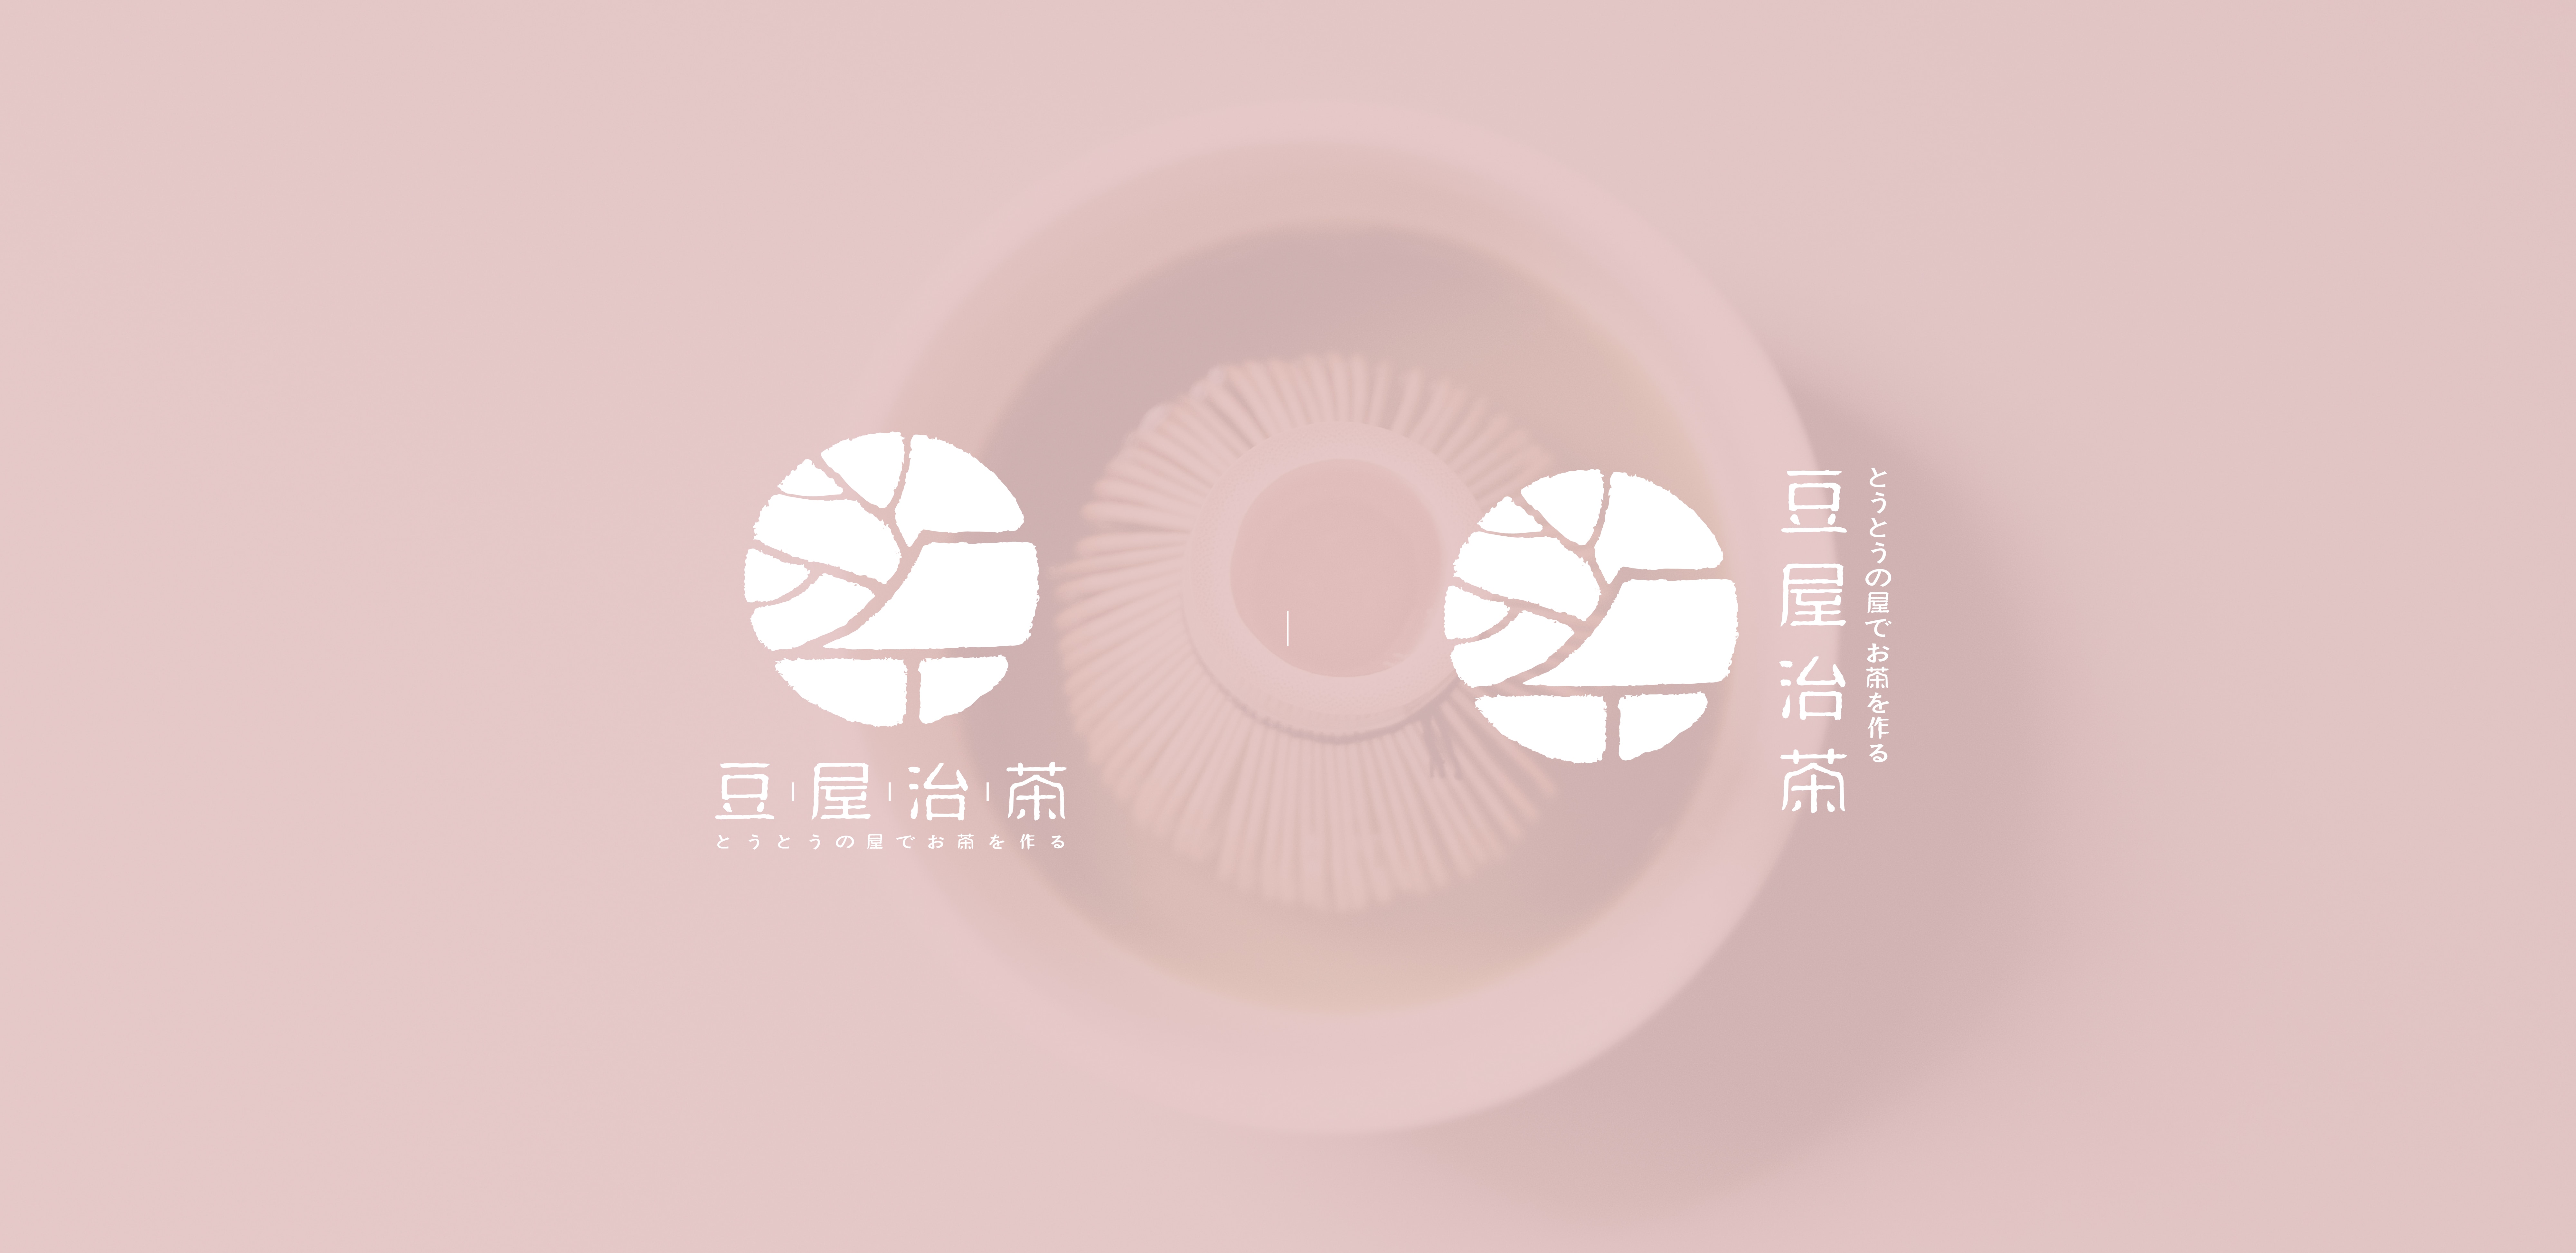 豆屋治茶logo设计